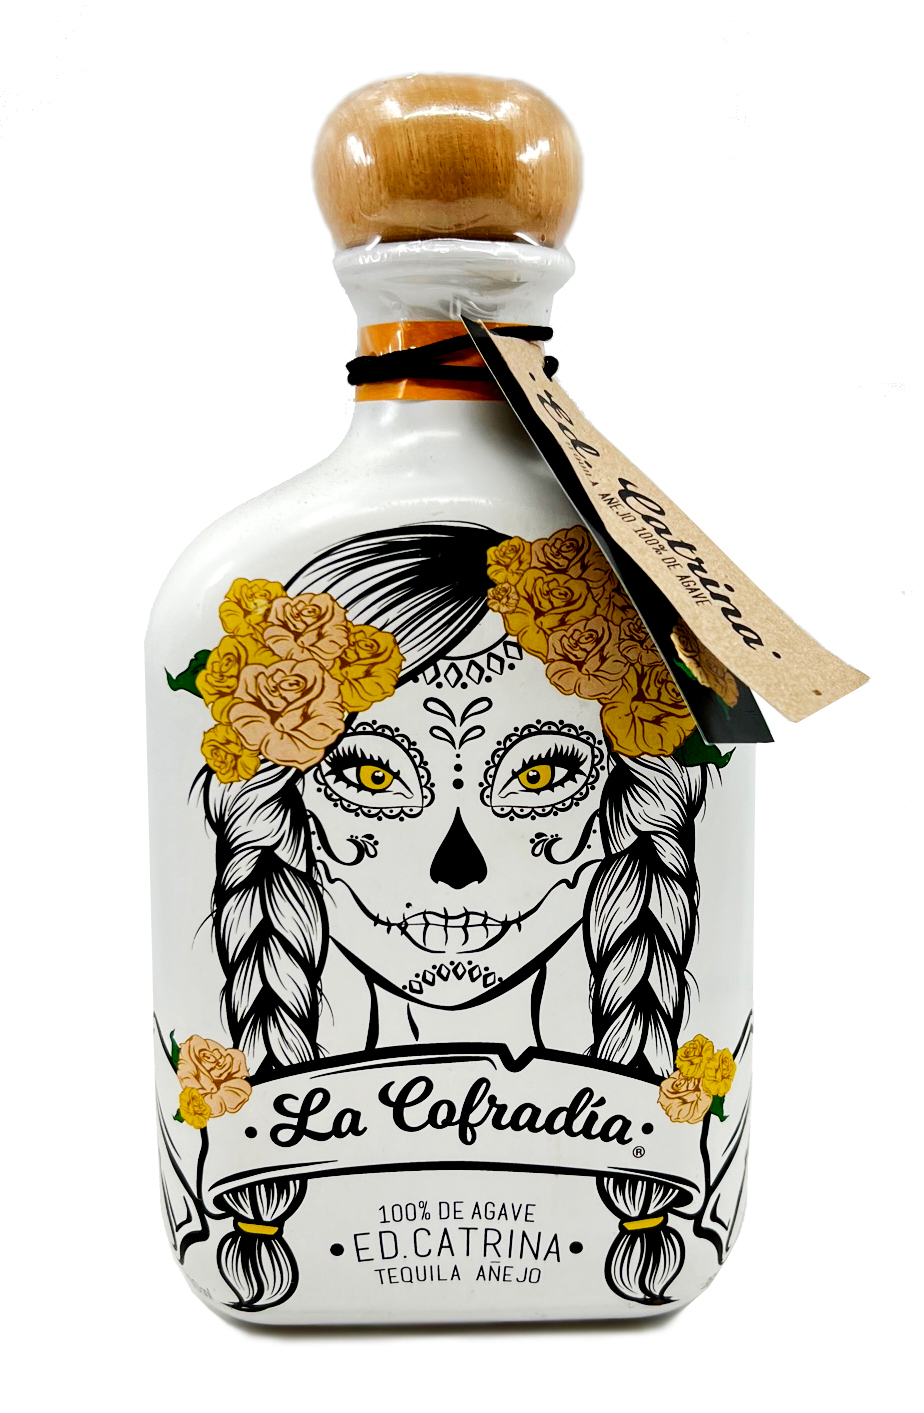 La Cofradia - Tequila Anejo 0,7l 38%vol.